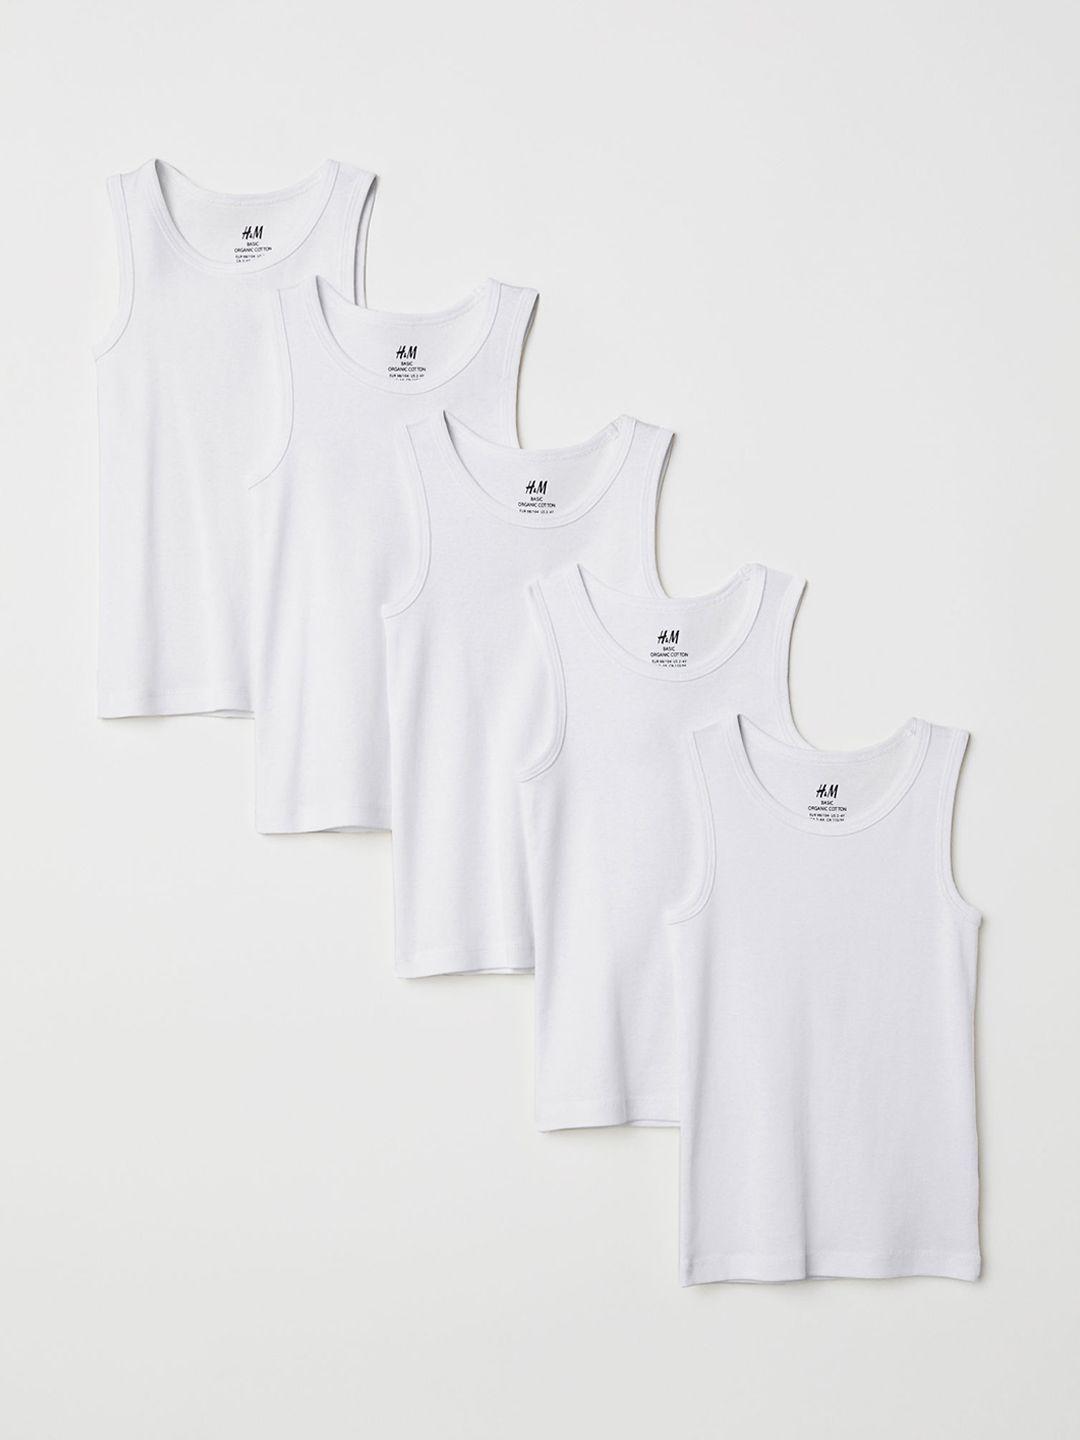 hm boys sustainable 5-pack cotton vest pure cotton t-shirts